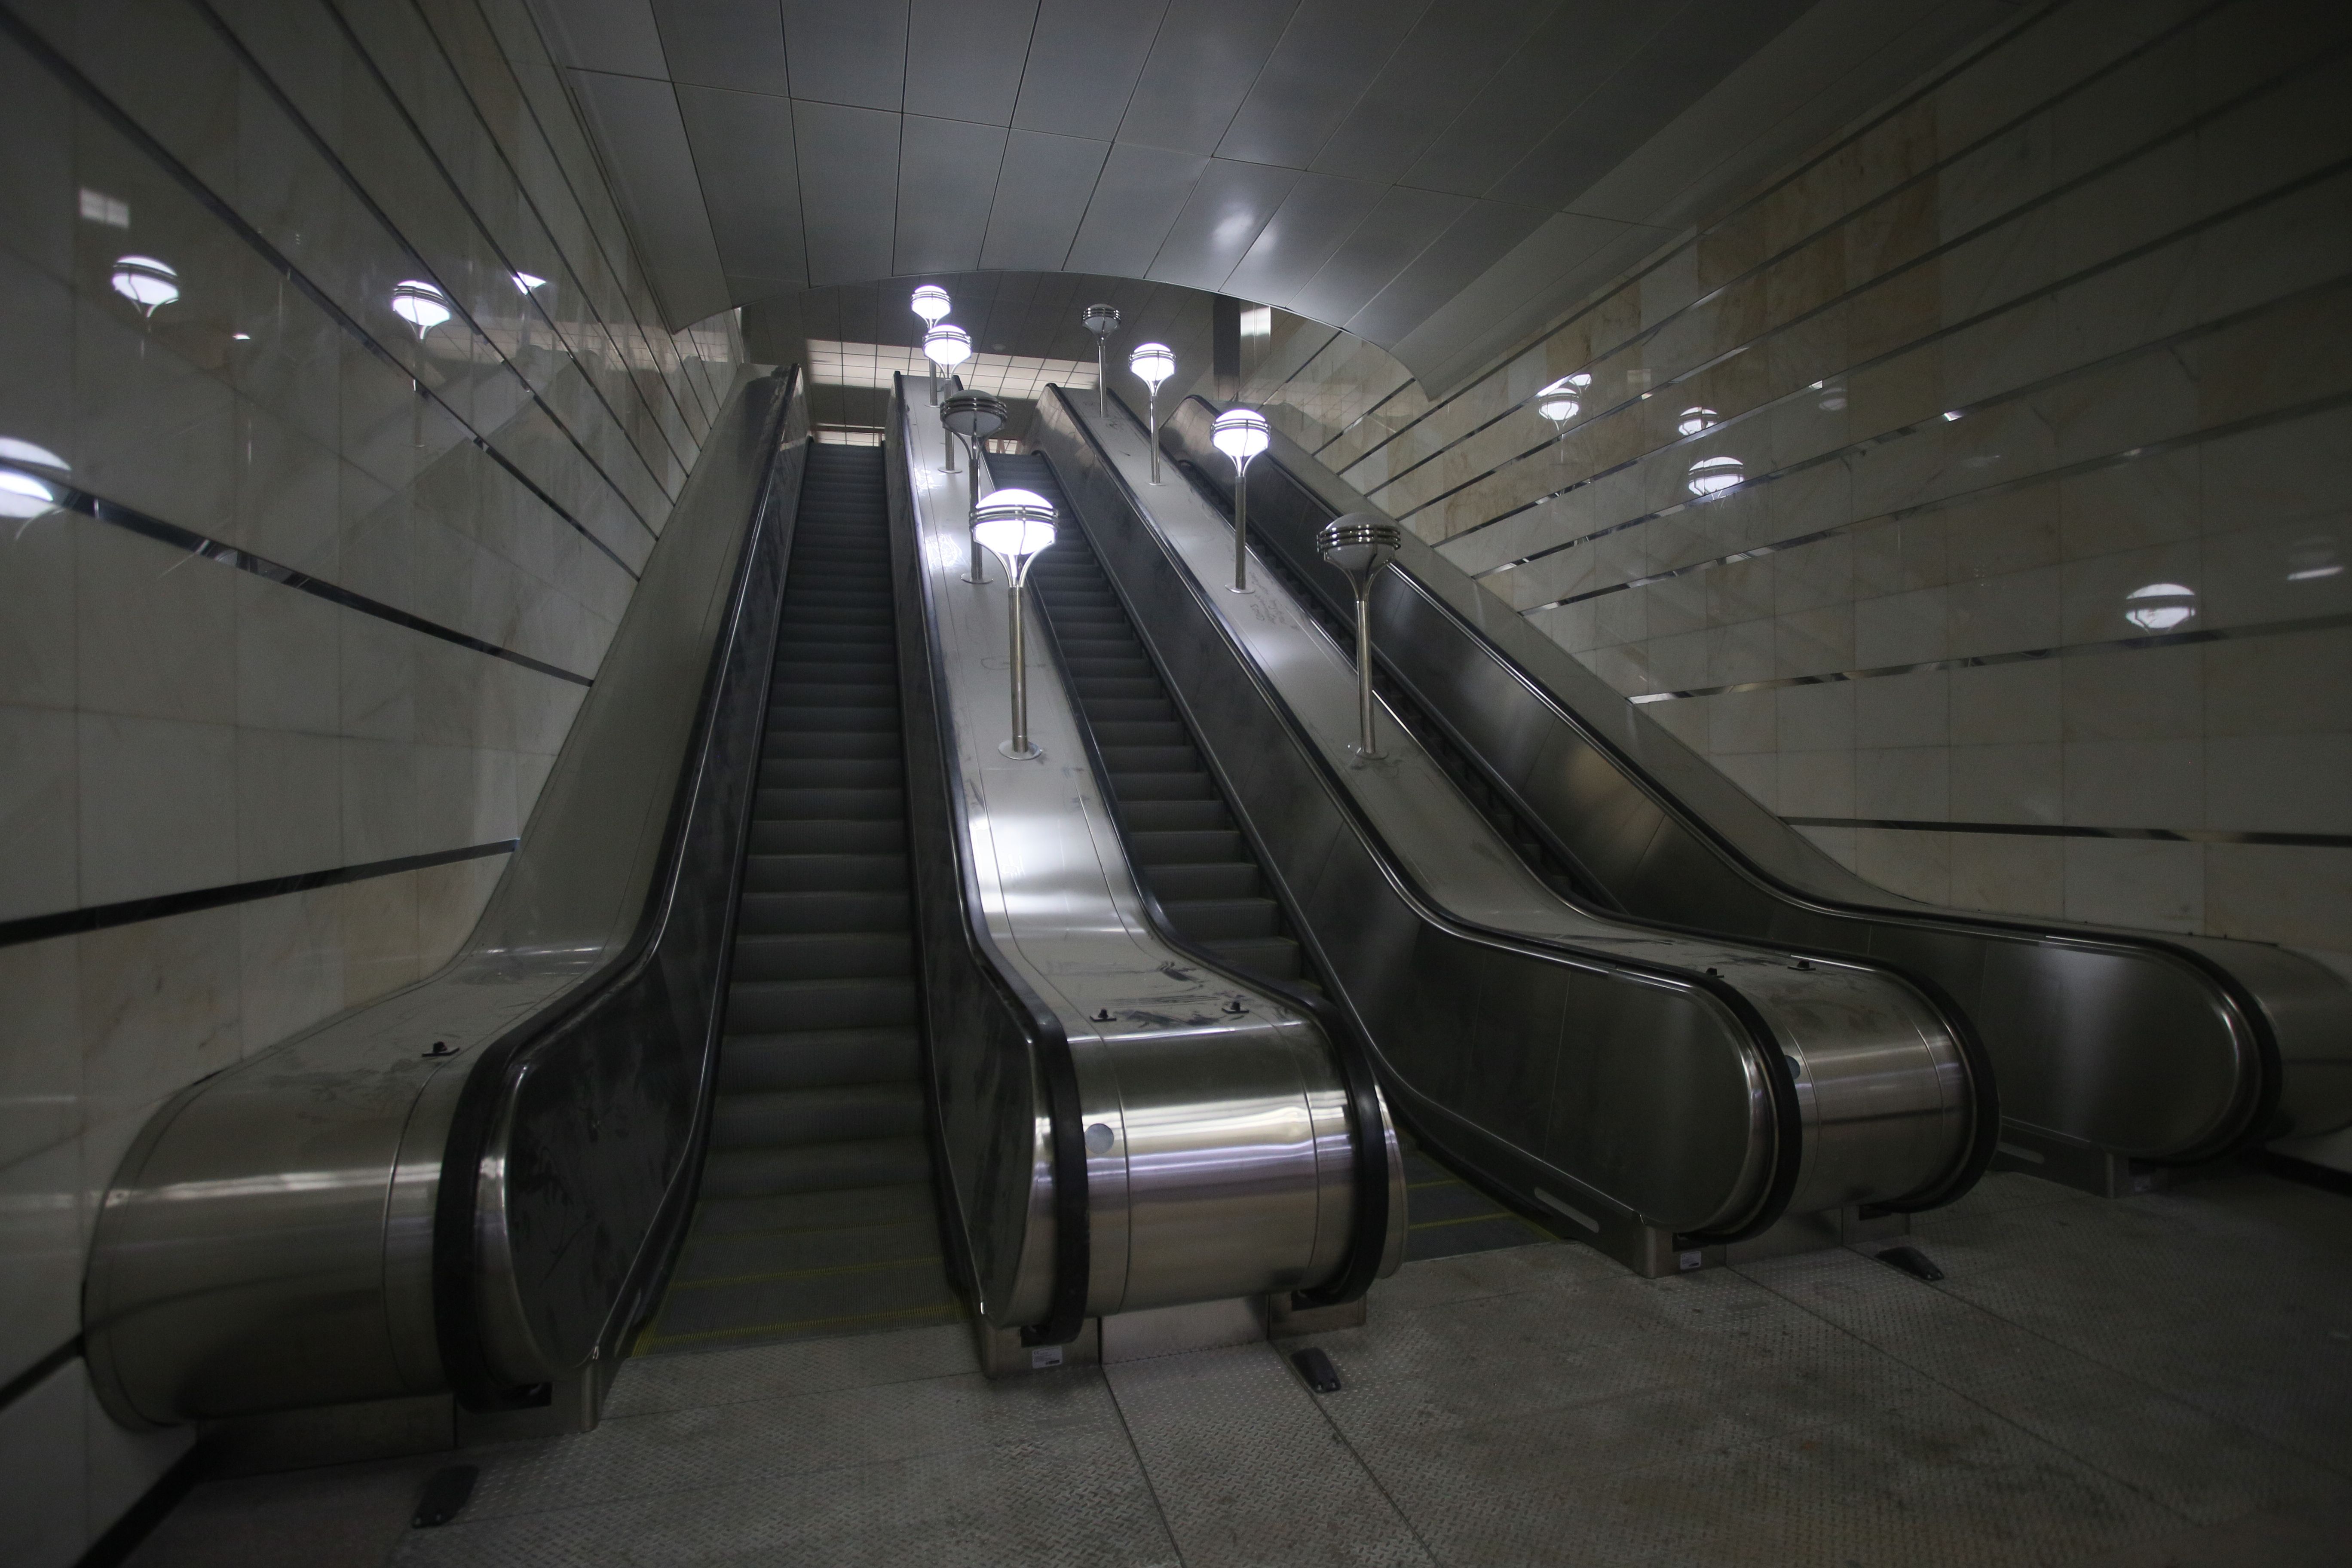 Семьдесят архитектурных студий Москвы подали заявки на конкурс по дизайну станций метро. Фото: Антон Гердо